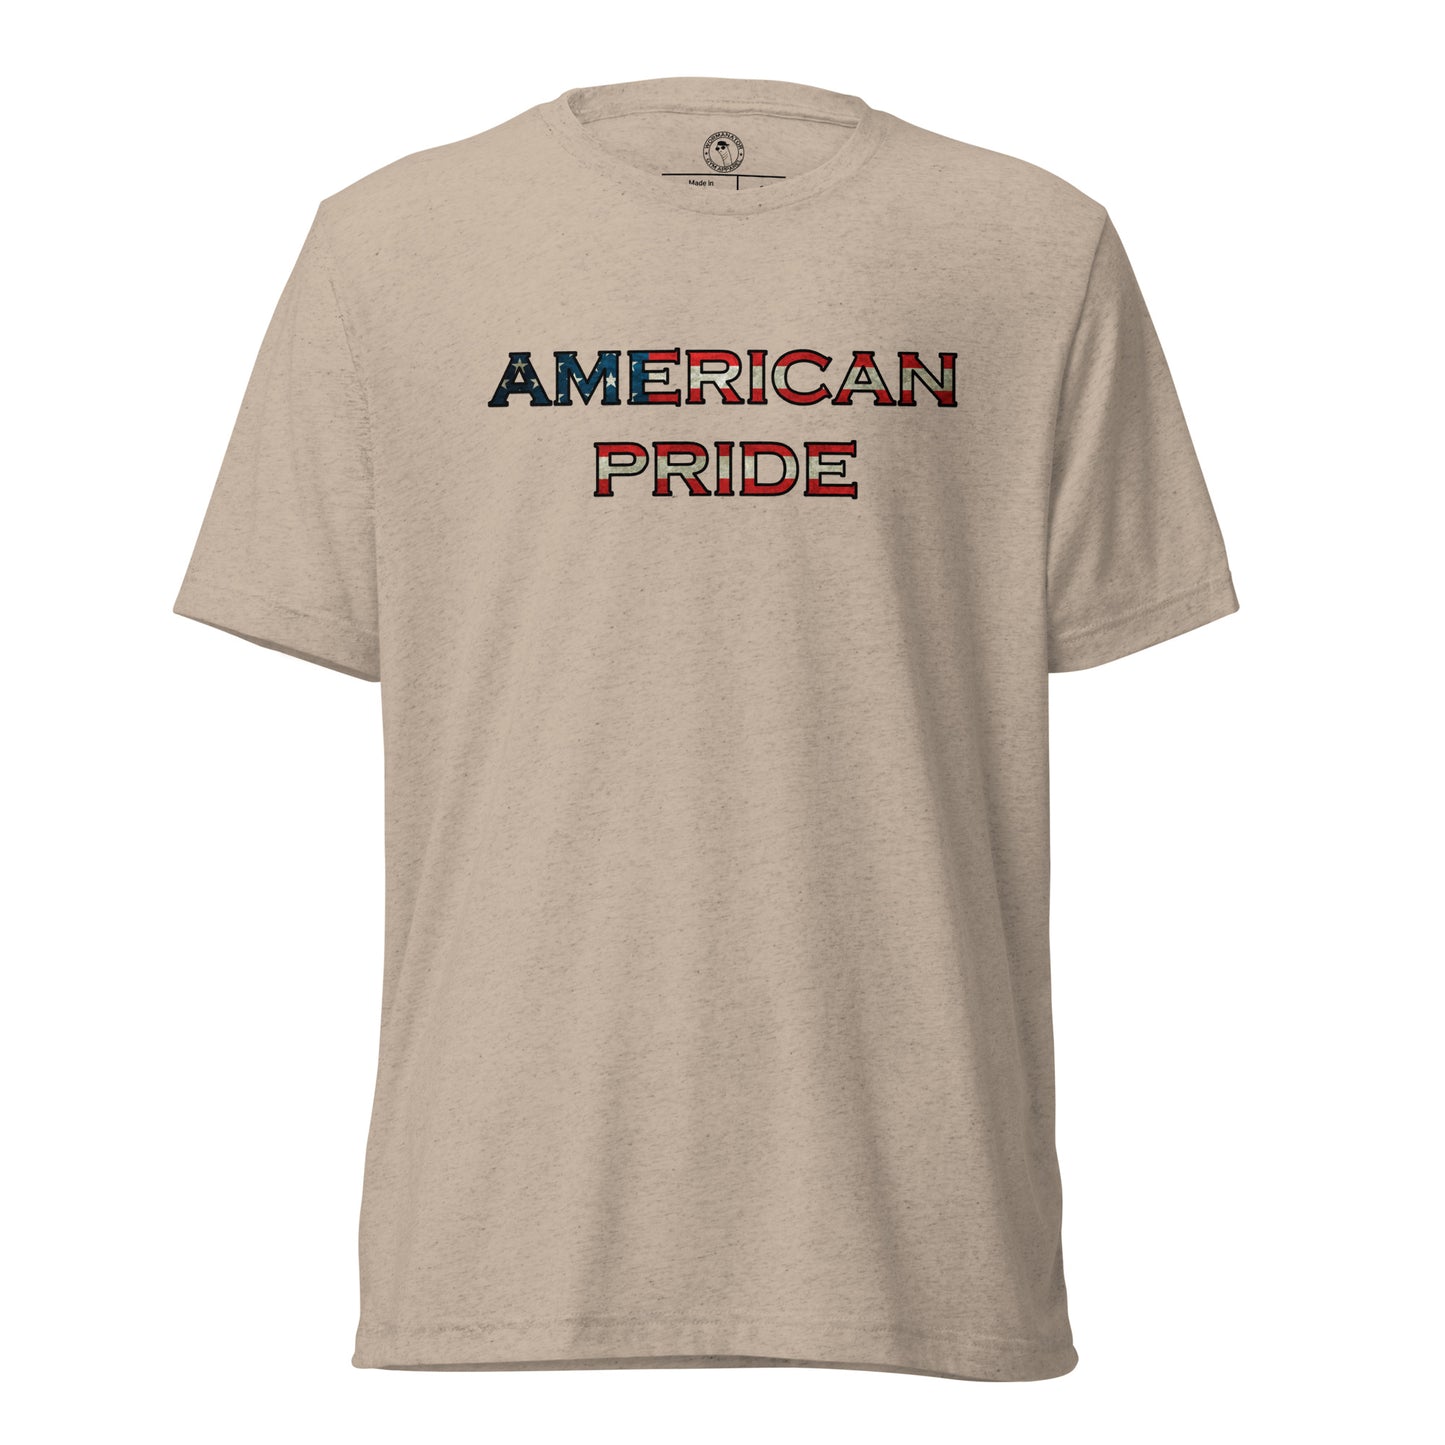 American Pride T-Shirt in Tan Triblend